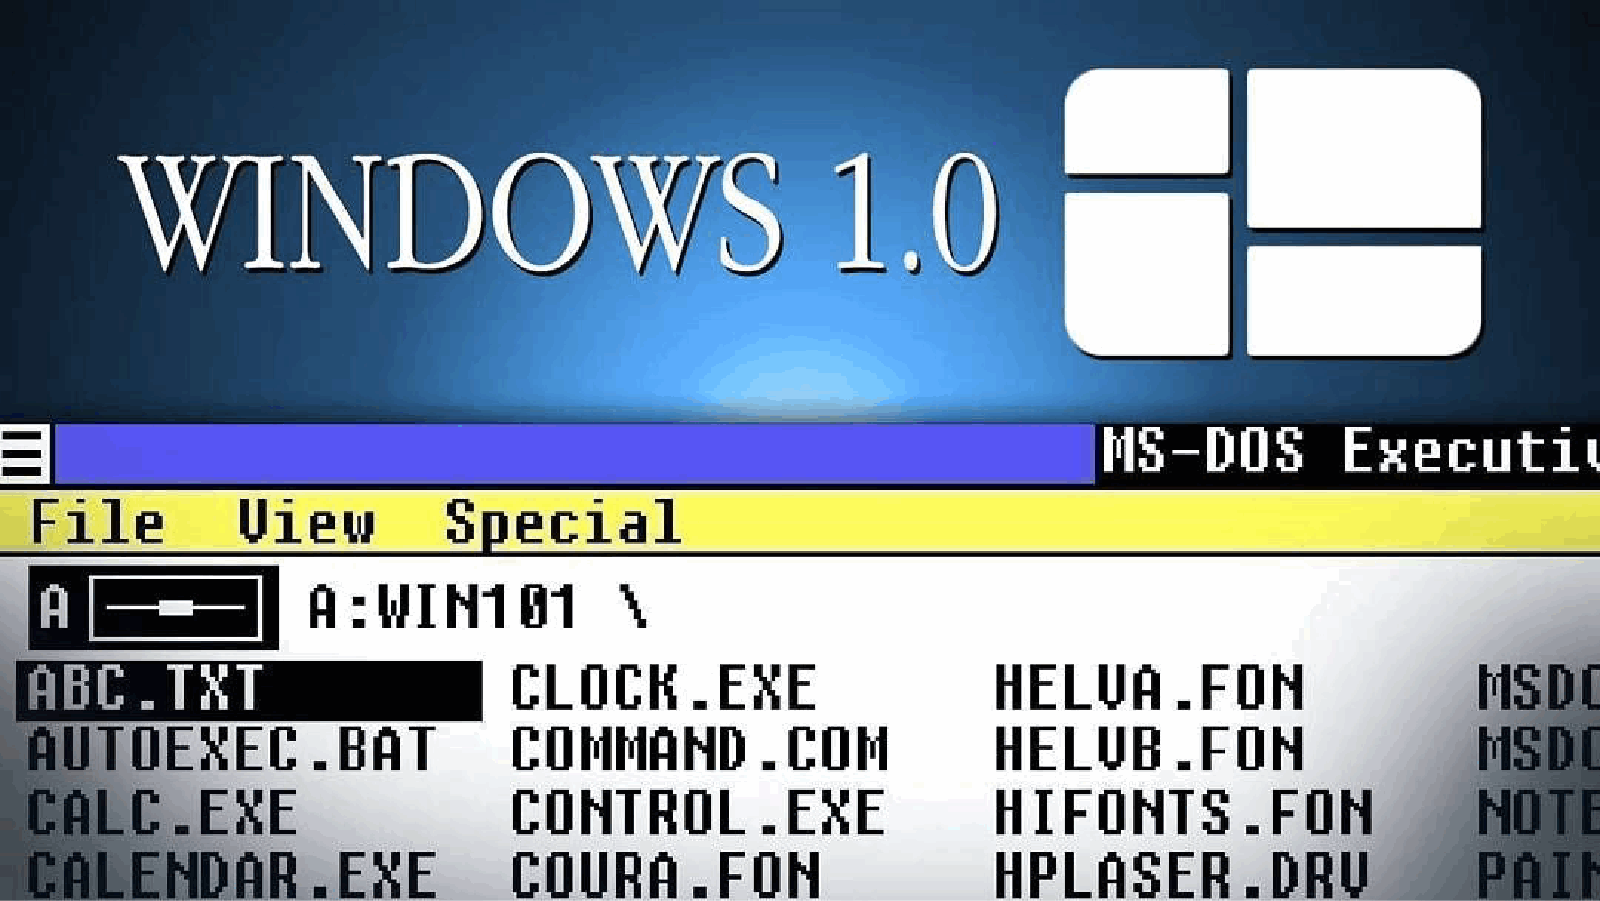 1.1 0 x. Microsoft Windows 1985. Как выглядит виндовс 1.0. Windows 1.0 1985. Самая первая версия Windows.